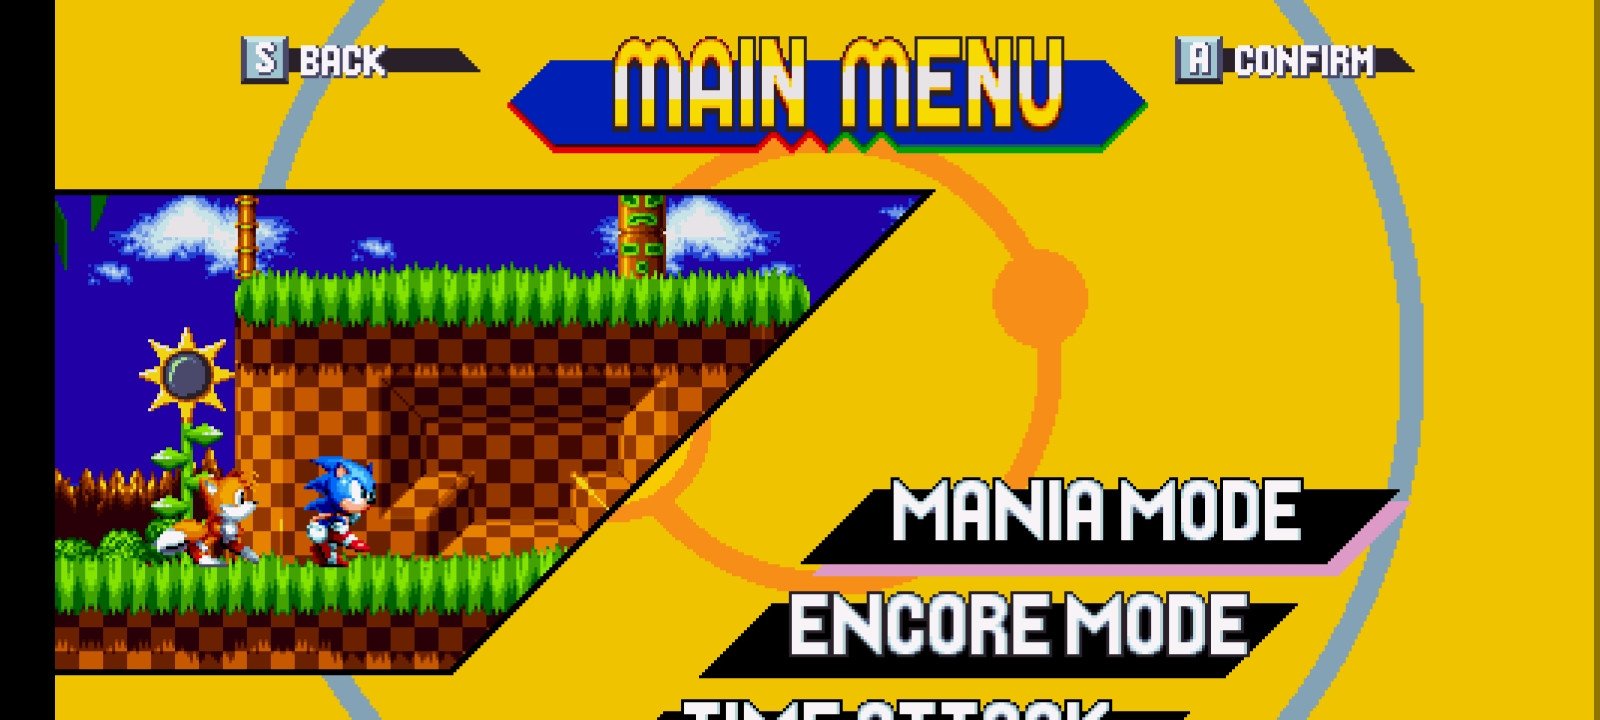 Sonic Mania ganha port em APK para Android - Mobile Gamer